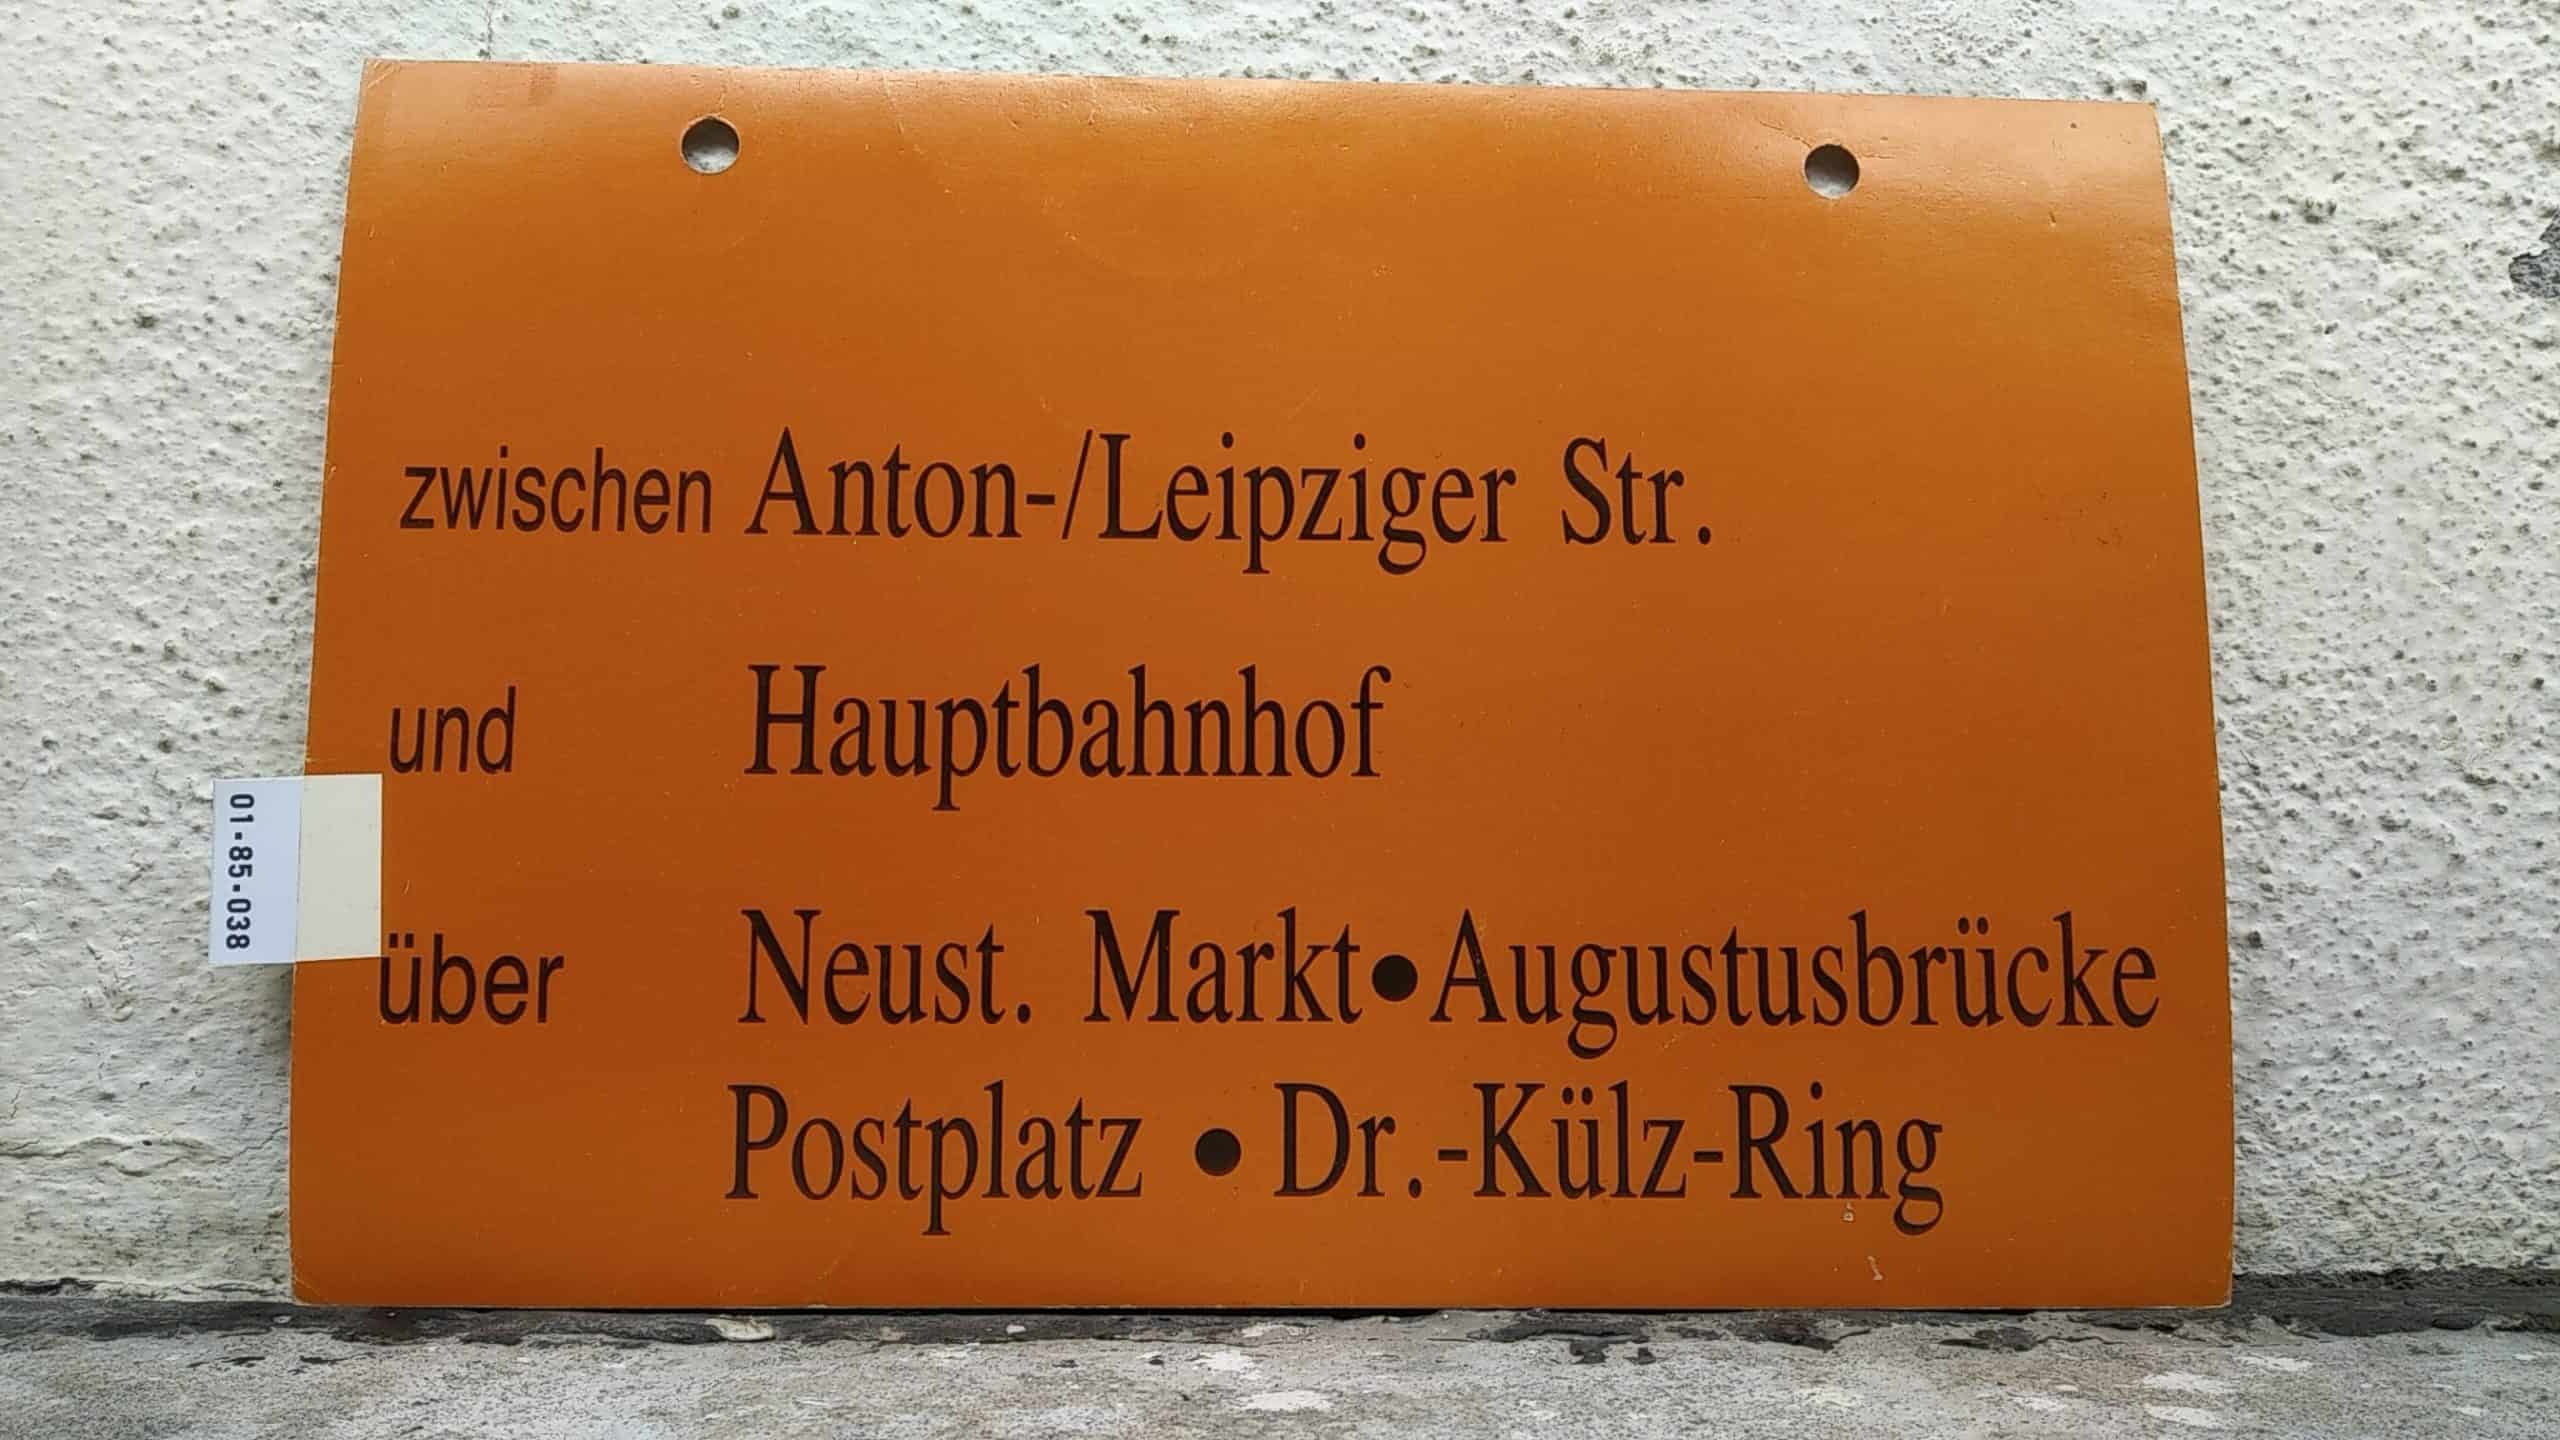 Ein seltenes Straßenbahn-Umleitungsschild aus Dresden: zwischen Anton-/Leipziger Str. und Hauptbahnhof über Neust. Markt-Augustusbrücke Postplatz - Dr.-Külz-Ring